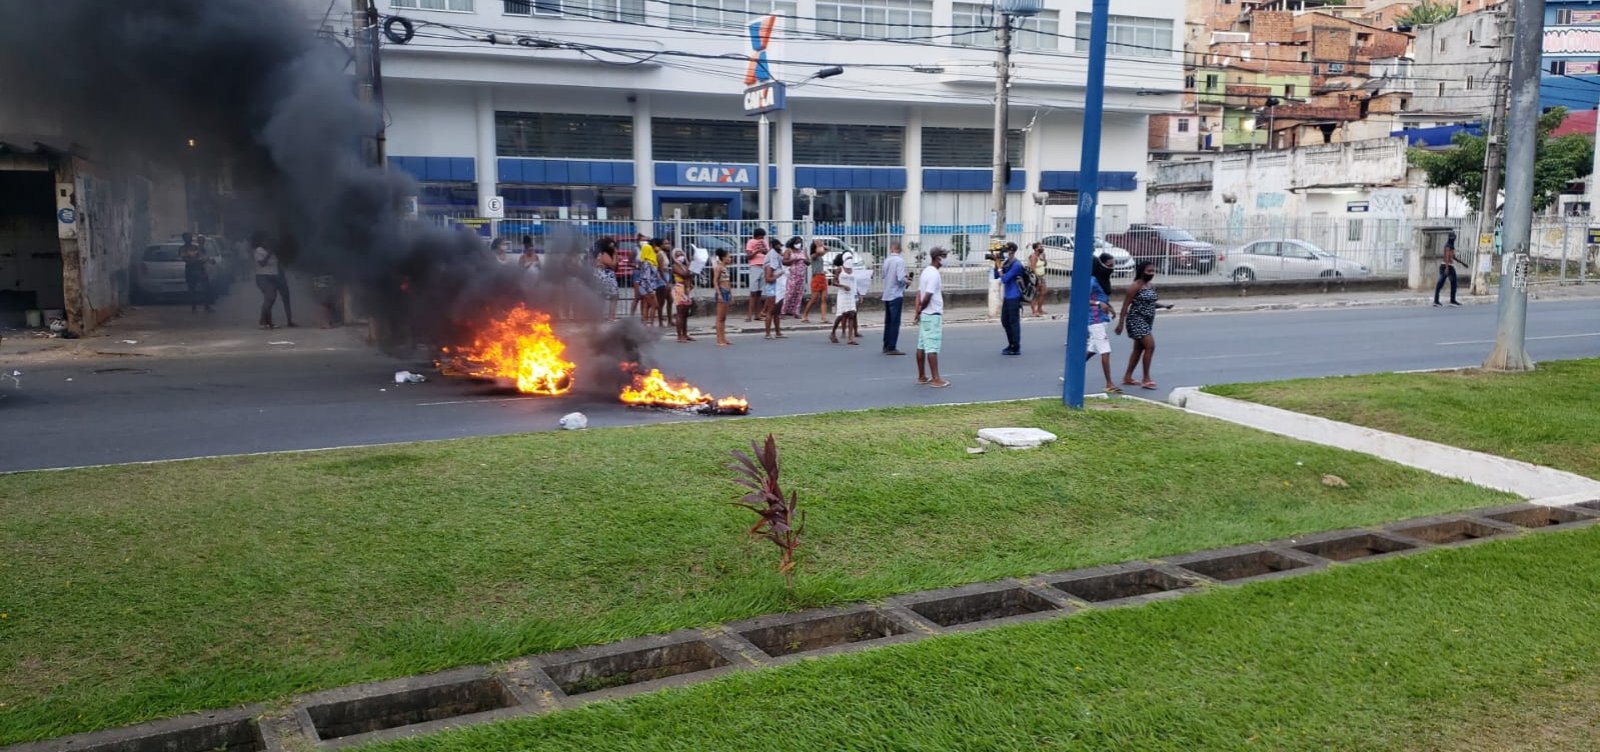 Contra violência em abordagem policial, manifestantes fecham trânsito na Avenida Vasco da Gama